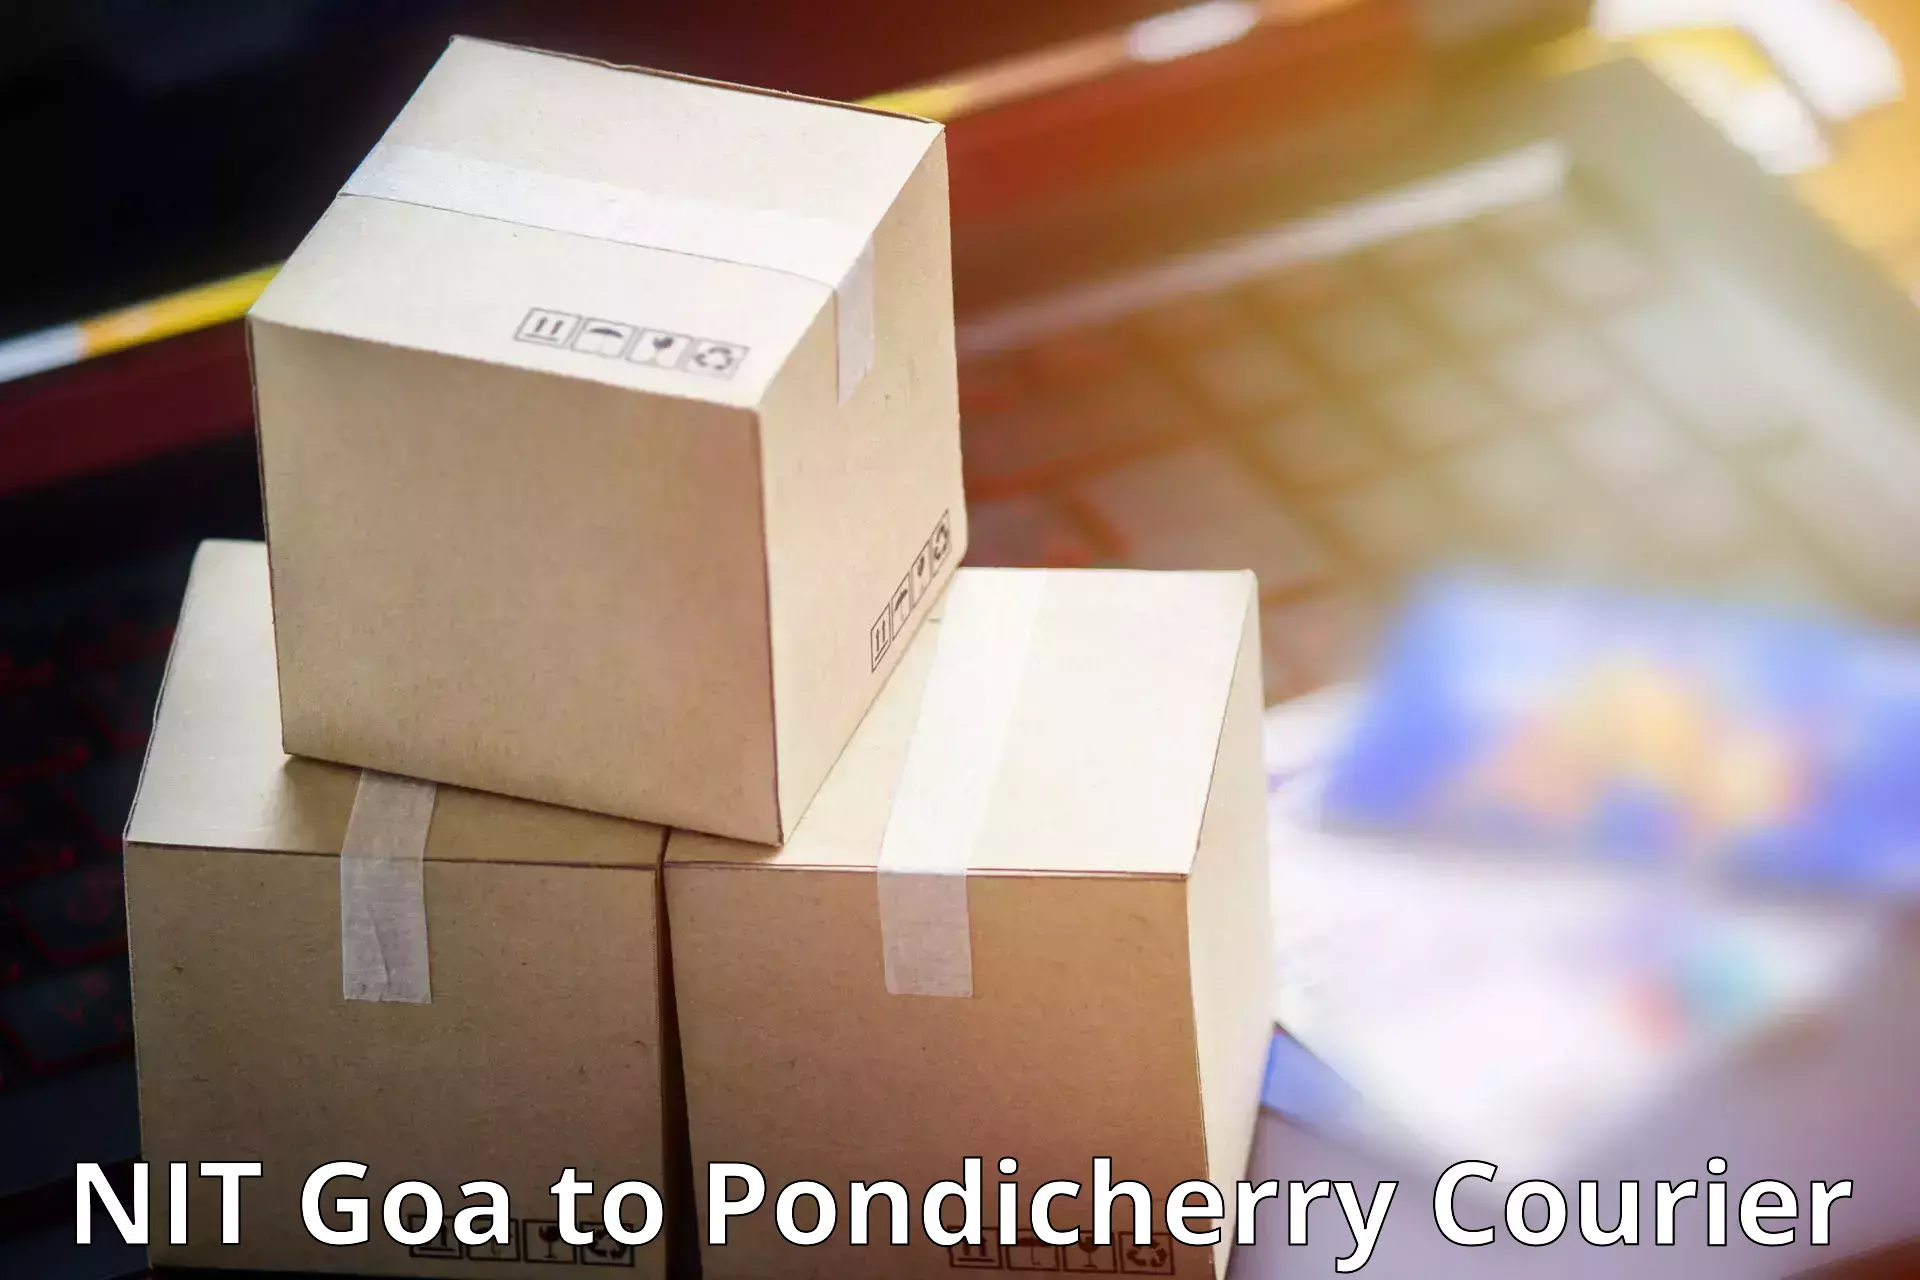 Door-to-door freight service NIT Goa to Pondicherry